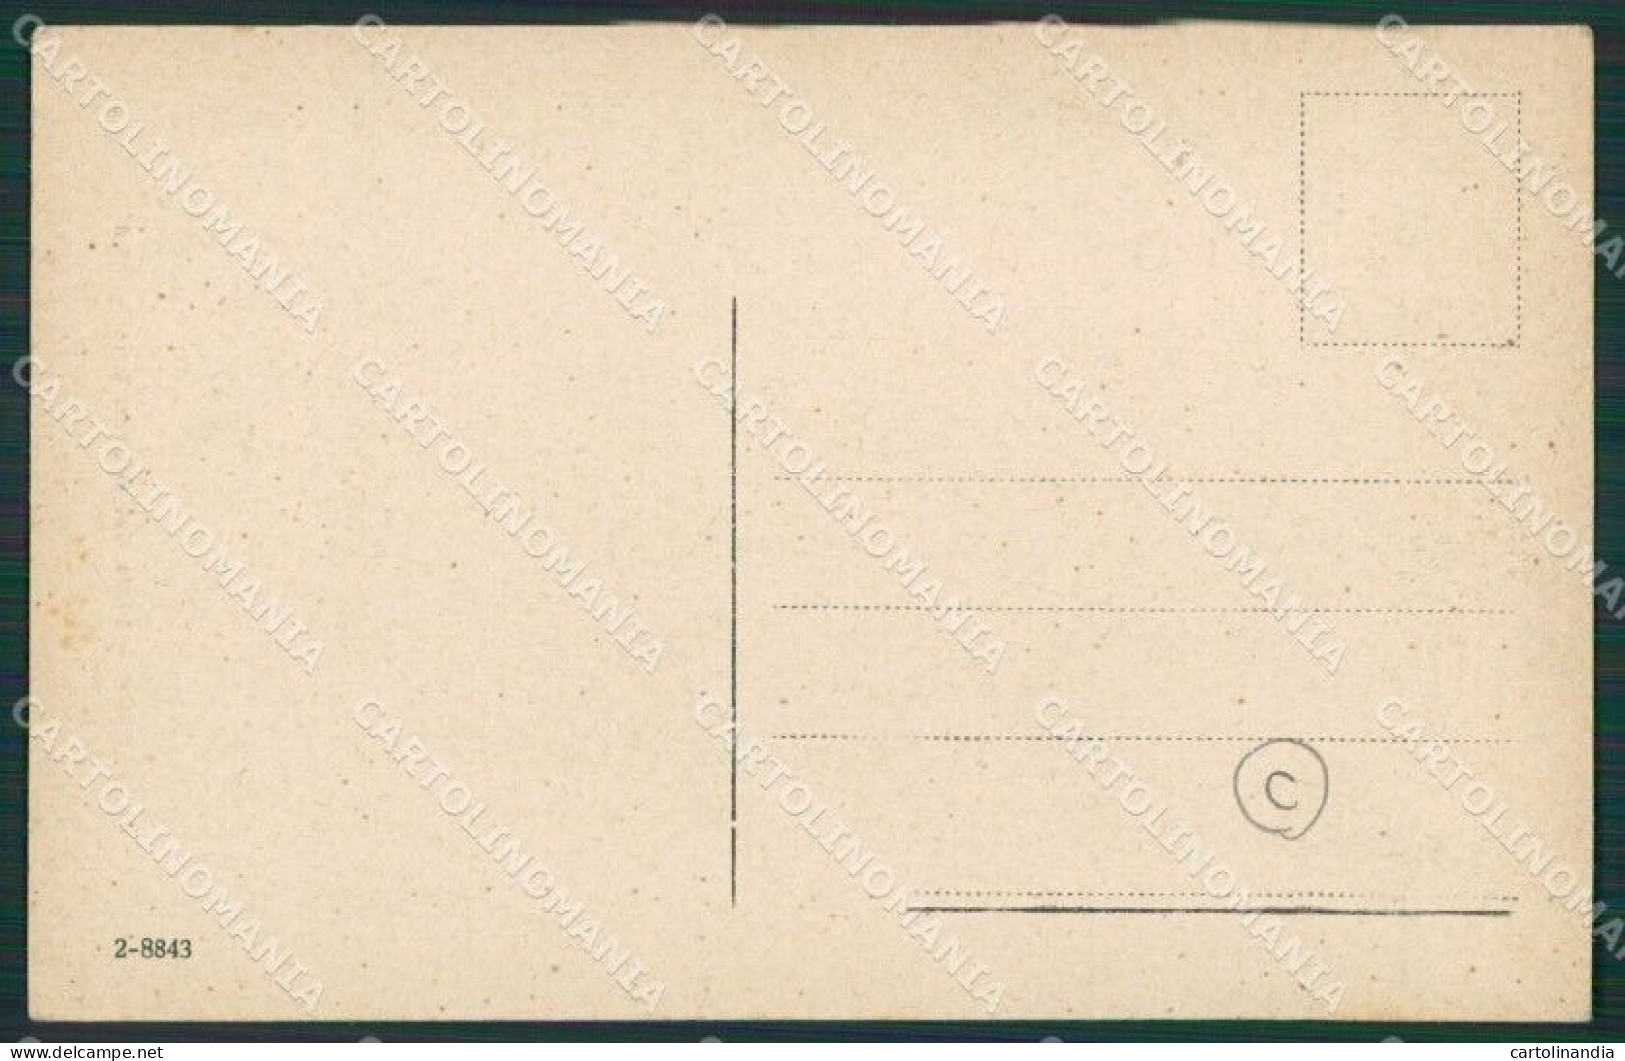 Macerata Camerino Cartolina QK6488 - Macerata